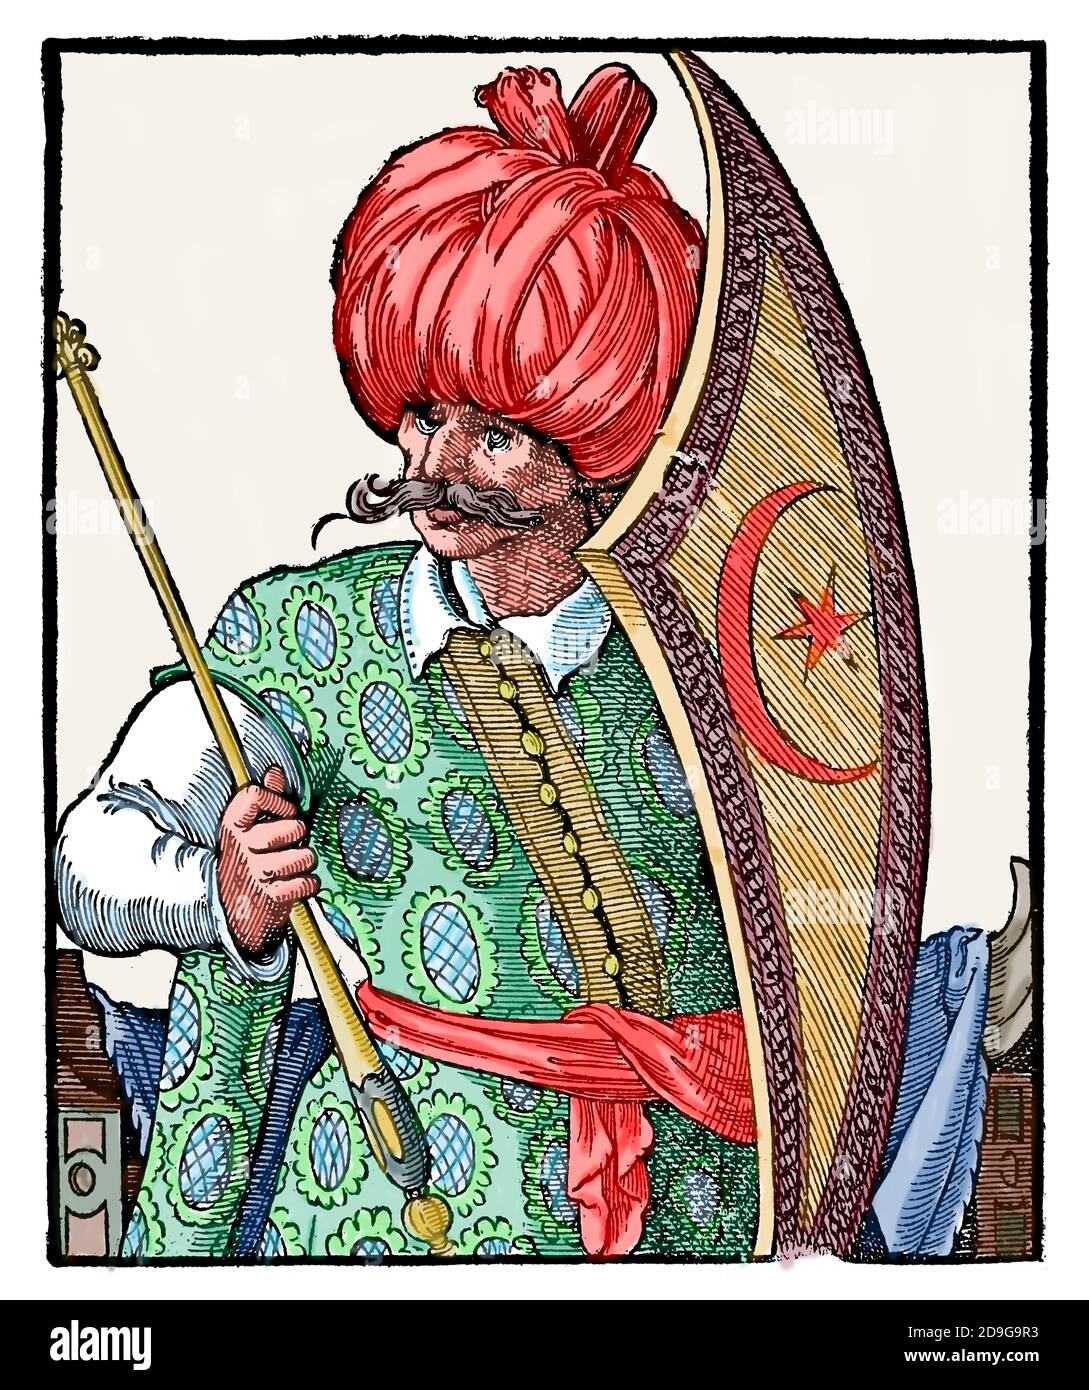 Moderne Zeit. Osmanisches Reich. 16. Jahrhundert. Turk mit Schild und Zepter. Stich von Jost Amman, 16. Jahrhundert. Spätere Färbung. Stockfoto